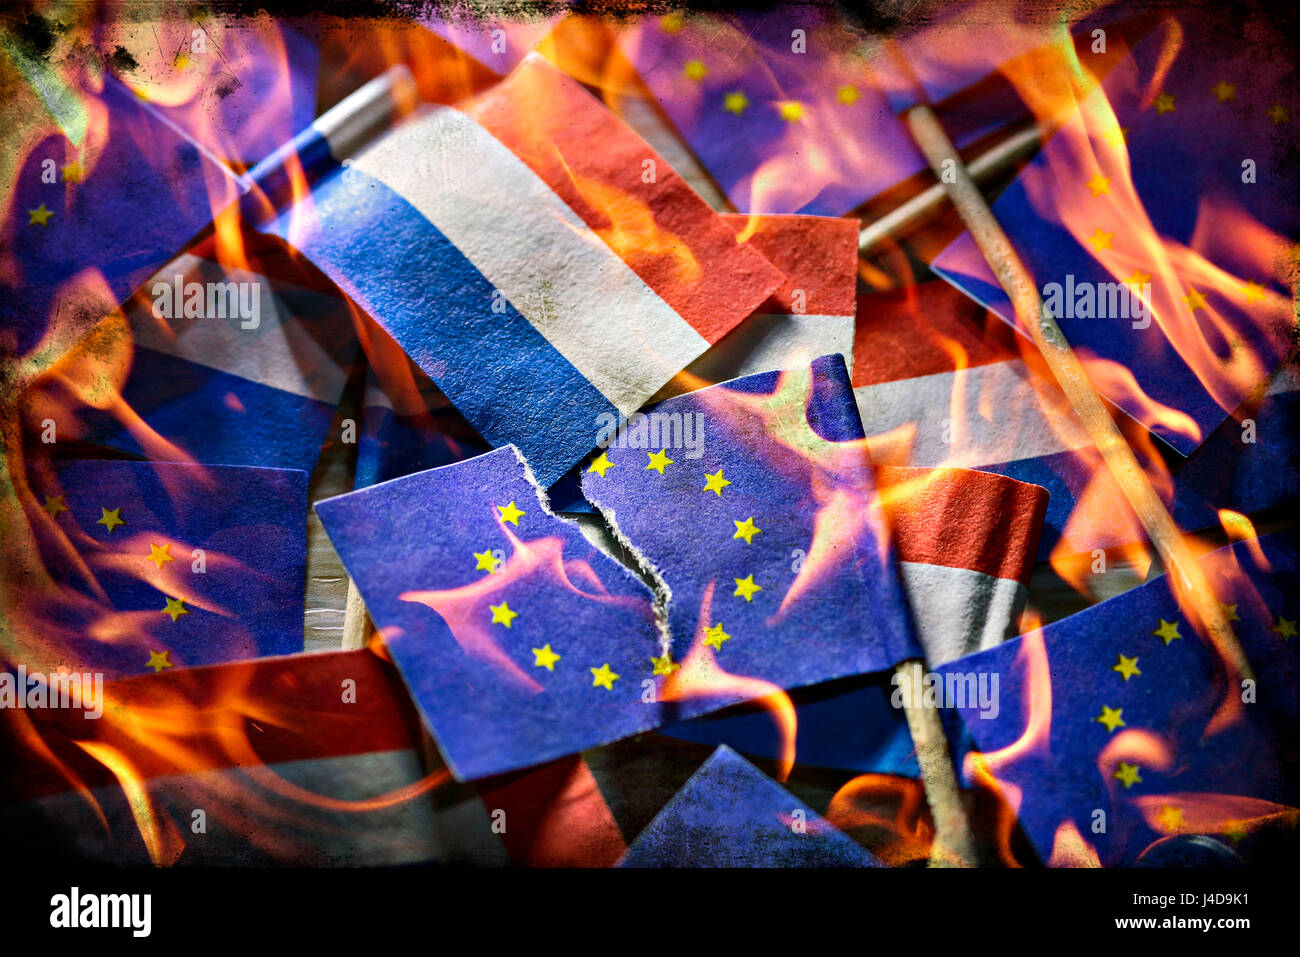 Zerrissene Fahne der EU und der Flagge der Niederlande in Flammen, symbolische Foto Parlamentswahlen in den Niederlanden, Zerrissene Fahne der EU Und Fahn Stockfoto